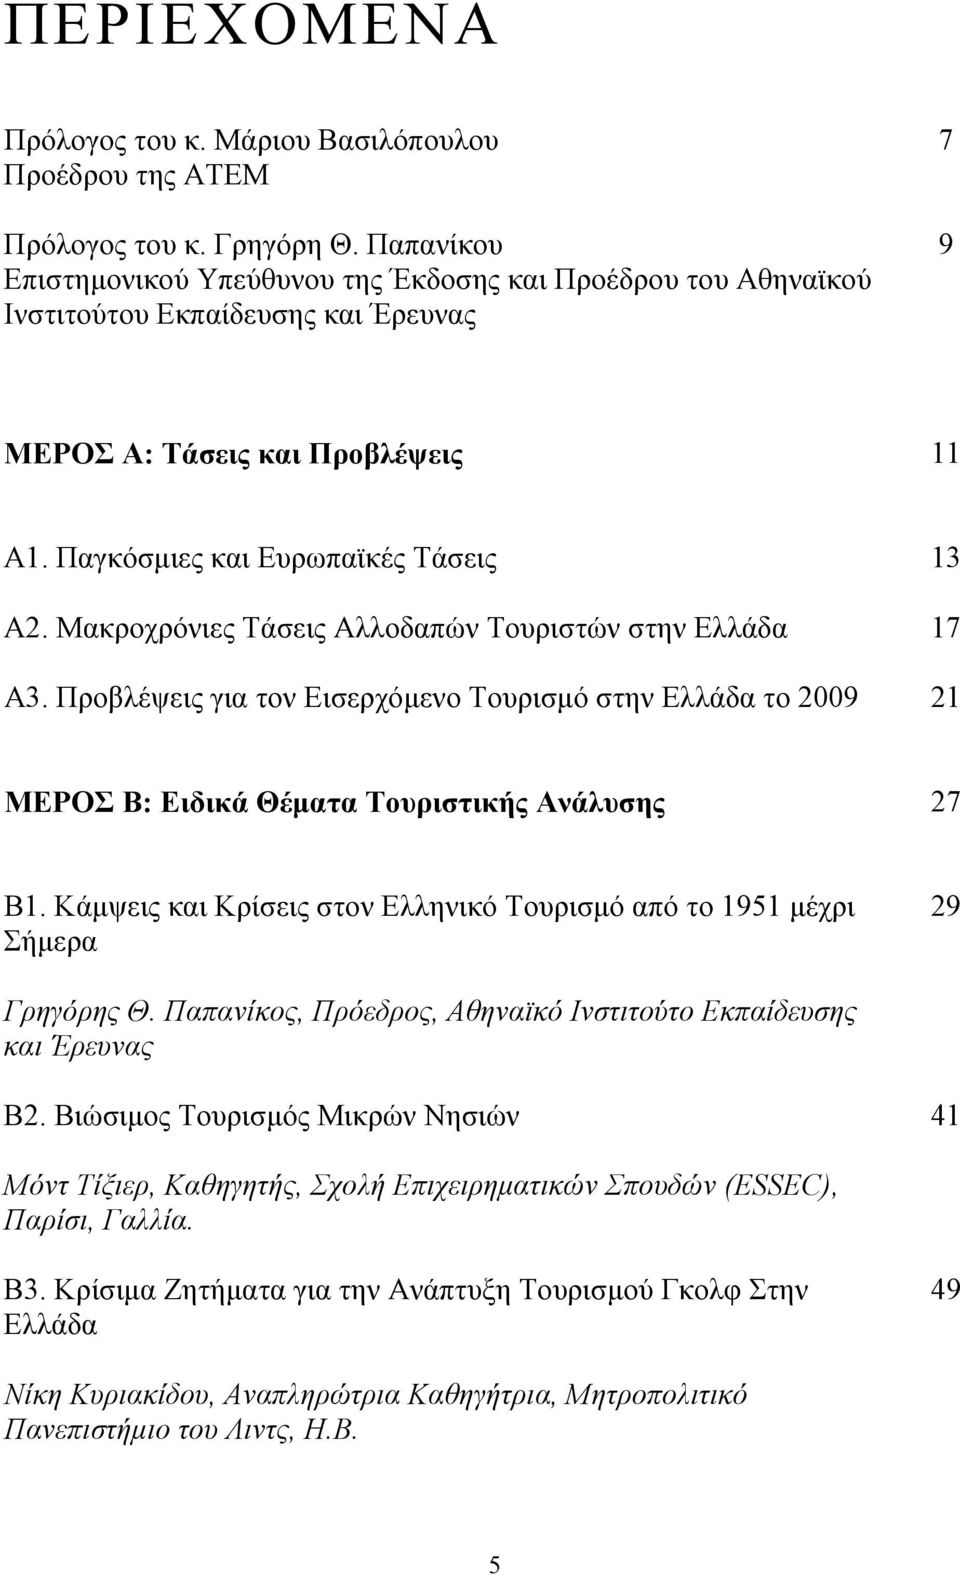 Μακροχρόνιες Τάσεις Αλλοδαπών Τουριστών στην Ελλάδα 17 Α3. Προβλέψεις για τον Εισερχόμενο Τουρισμό στην Ελλάδα το 2009 21 ΜΕΡΟΣ Β: Ειδικά Θέματα Τουριστικής Ανάλυσης 27 Β1.